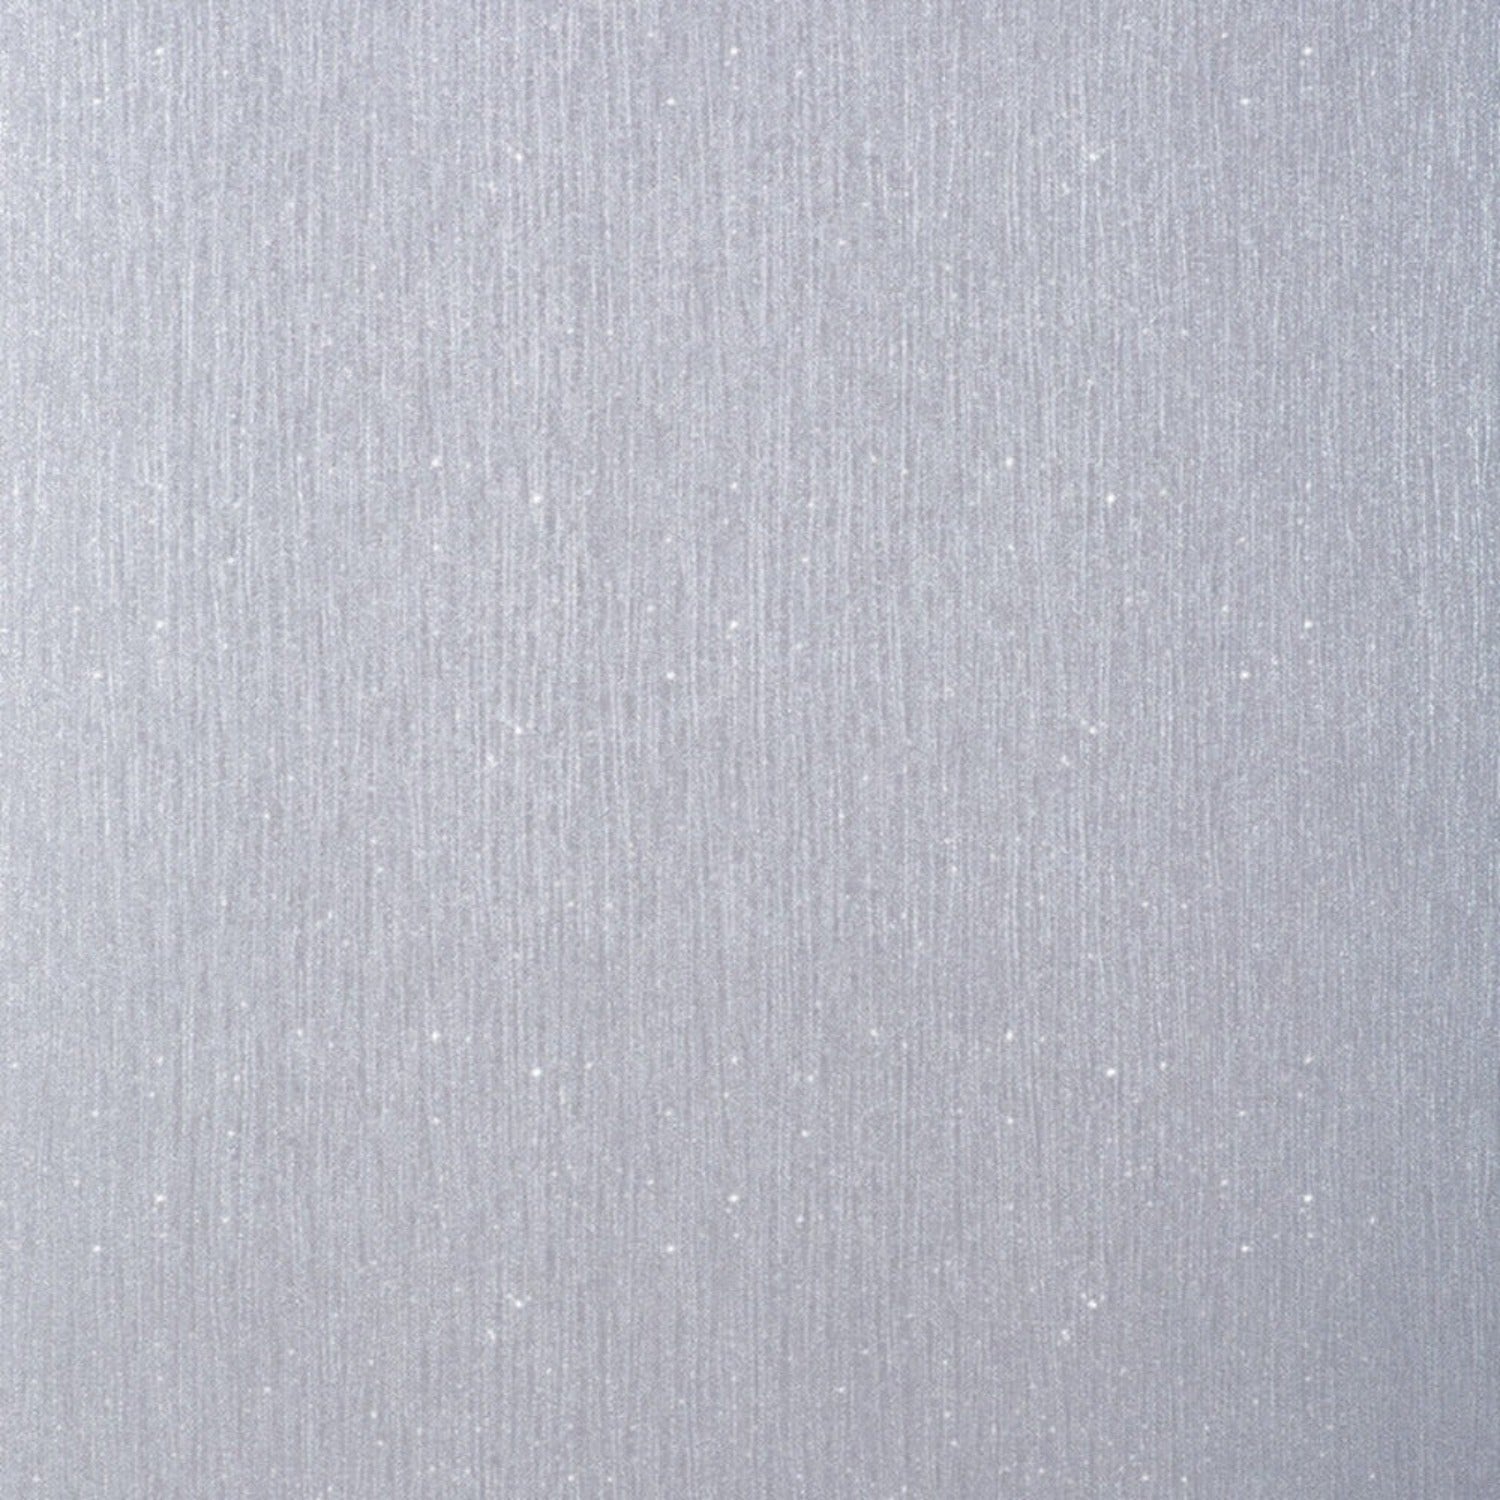 Crystal Grey Plain Wallpaper | WonderWall by Nobletts | #Variant SKU# | Debona